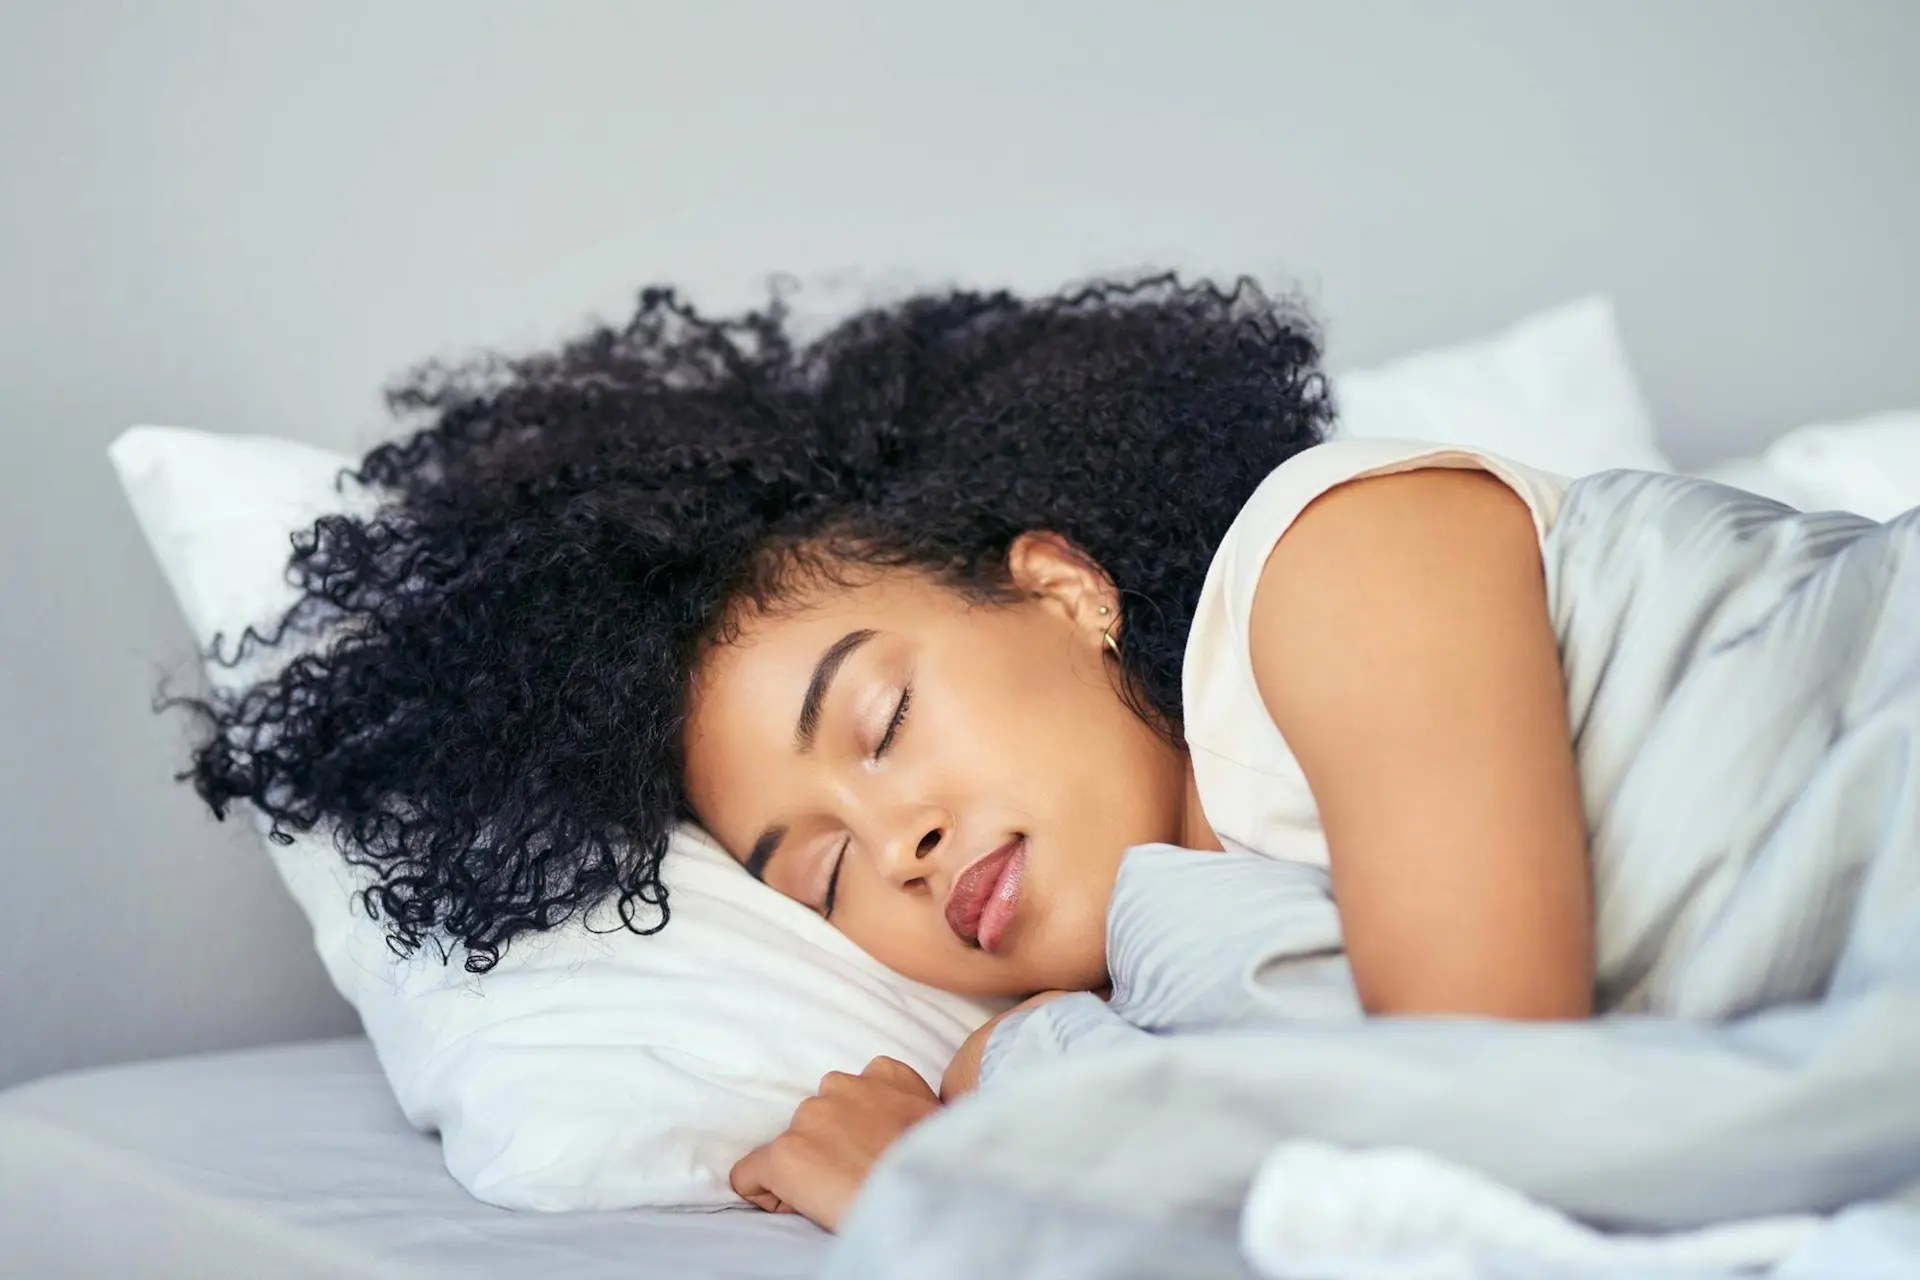 خواب روزانه مفید است یا مضر؟